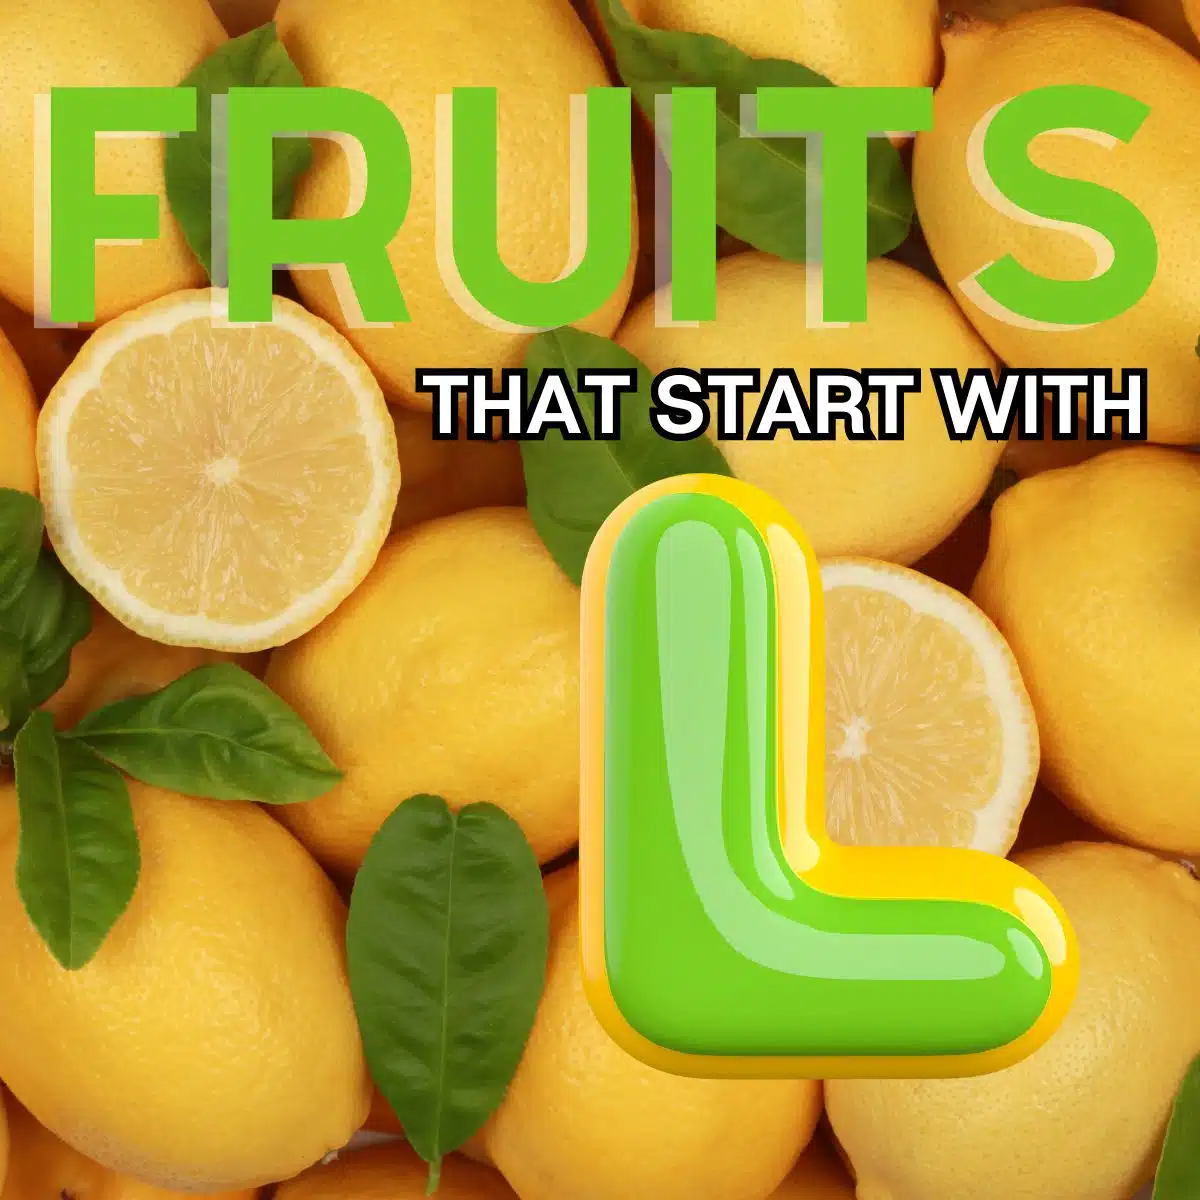 Firkantet billede for frugter, der starter med bogstavet L, med citroner.